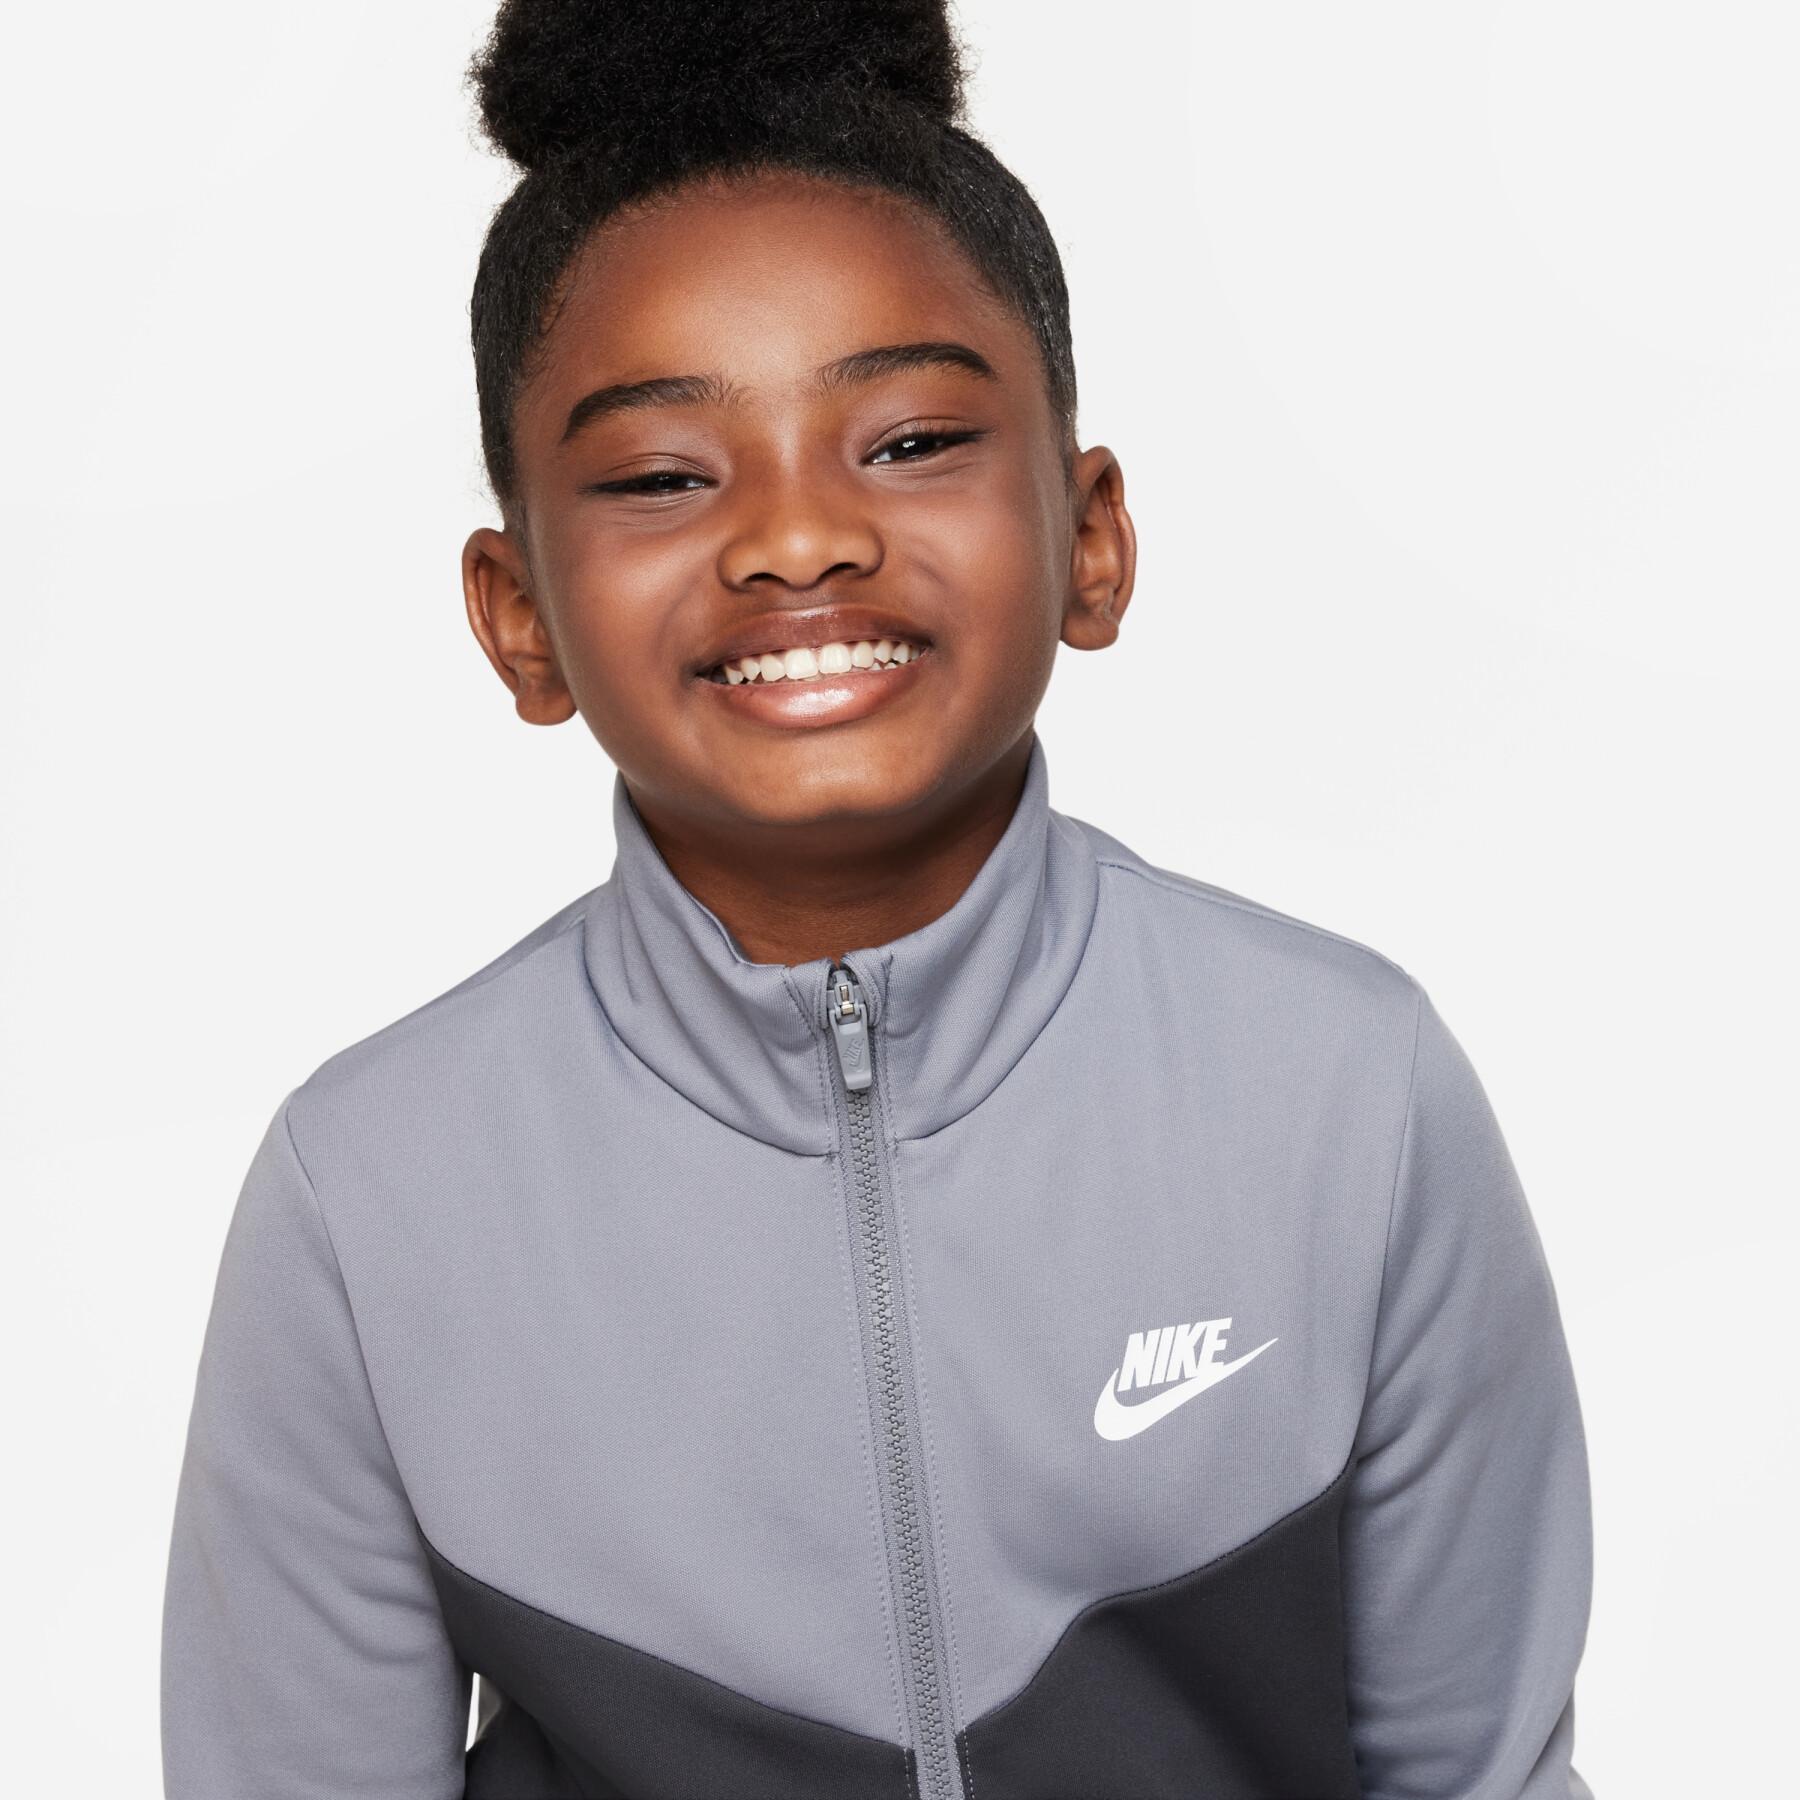 Children's full-zip tracksuit Nike HBR